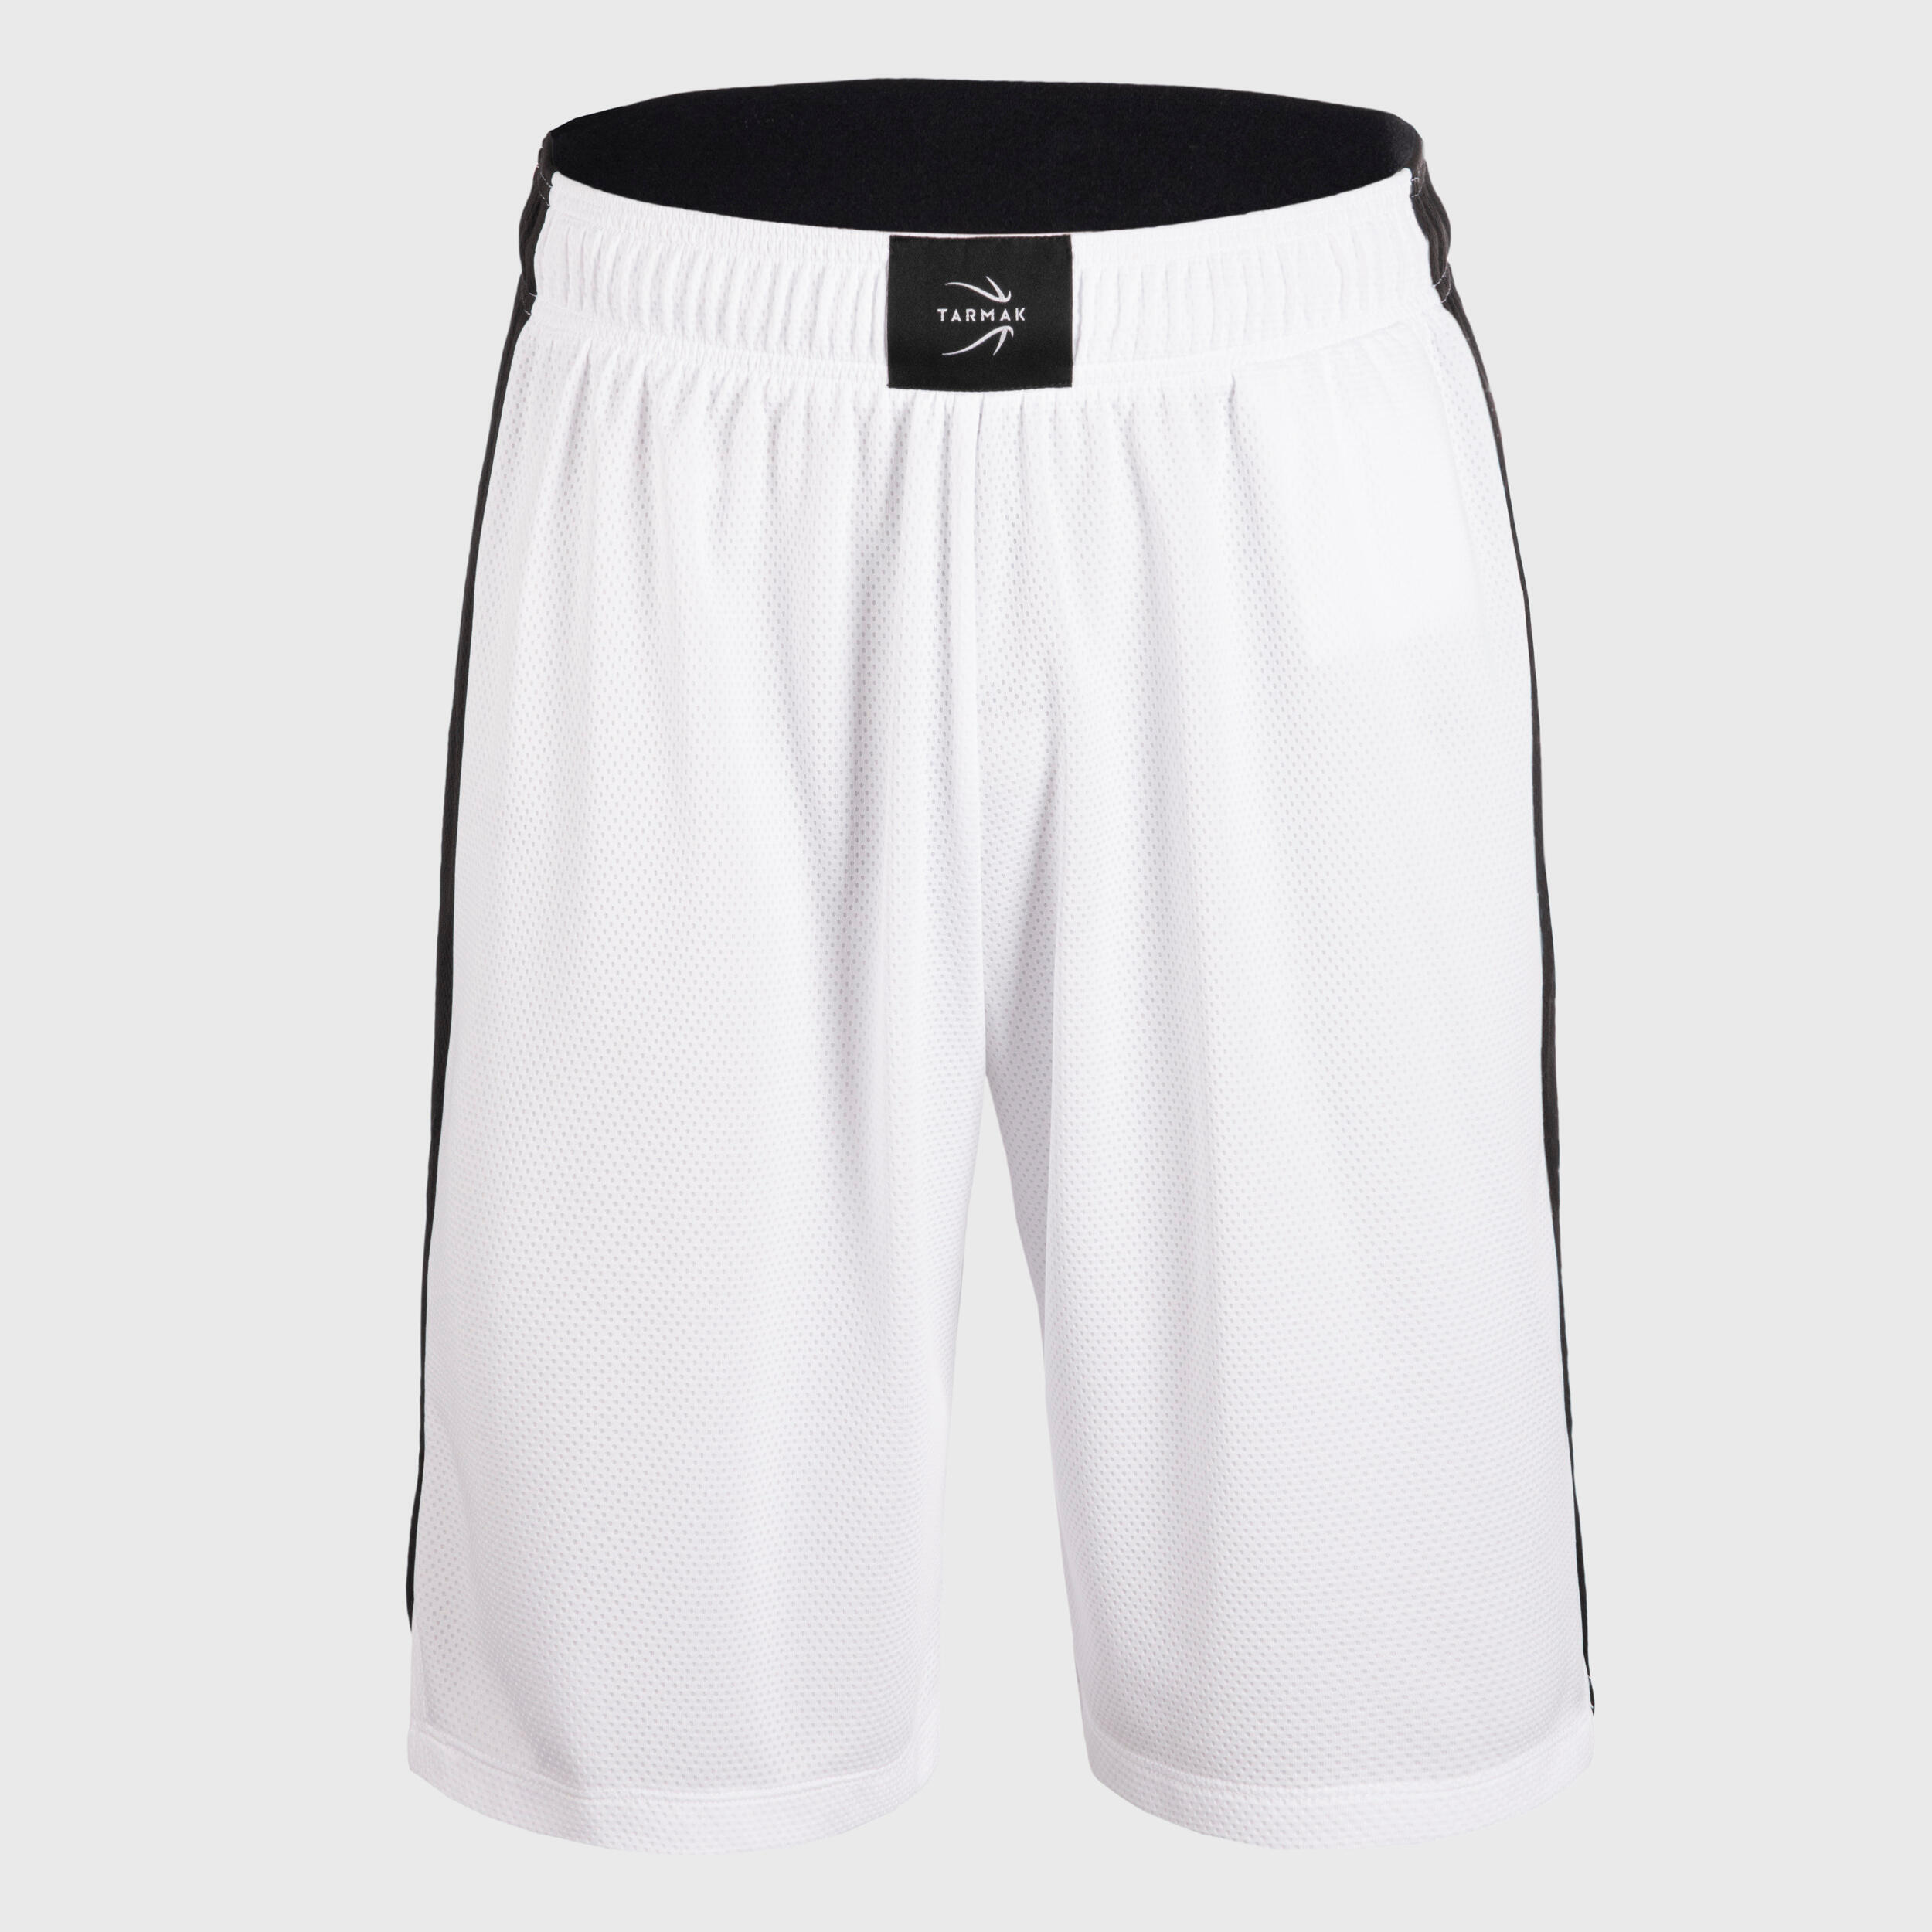 Men's/Women's Basketball Shorts SH500 - White 1/6